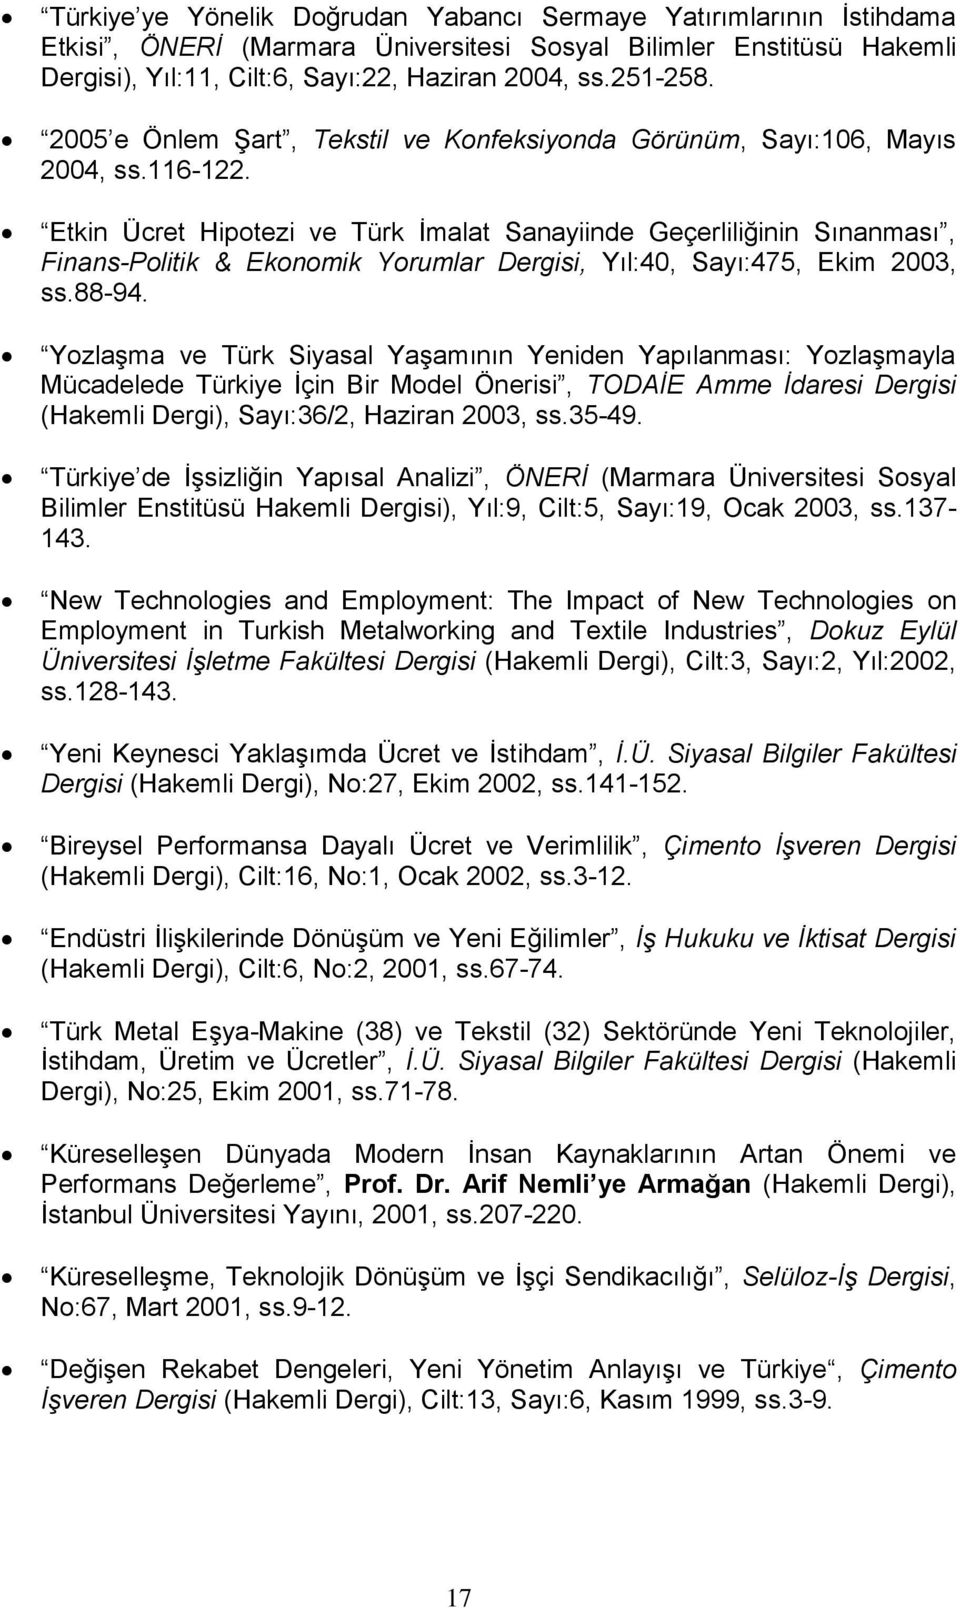 Etkin Ücret Hipotezi ve Türk İmalat Sanayiinde Geçerliliğinin Sınanması, Finans-Politik & Ekonomik Yorumlar Dergisi, Yıl:40, Sayı:475, Ekim 2003, ss.88-94.